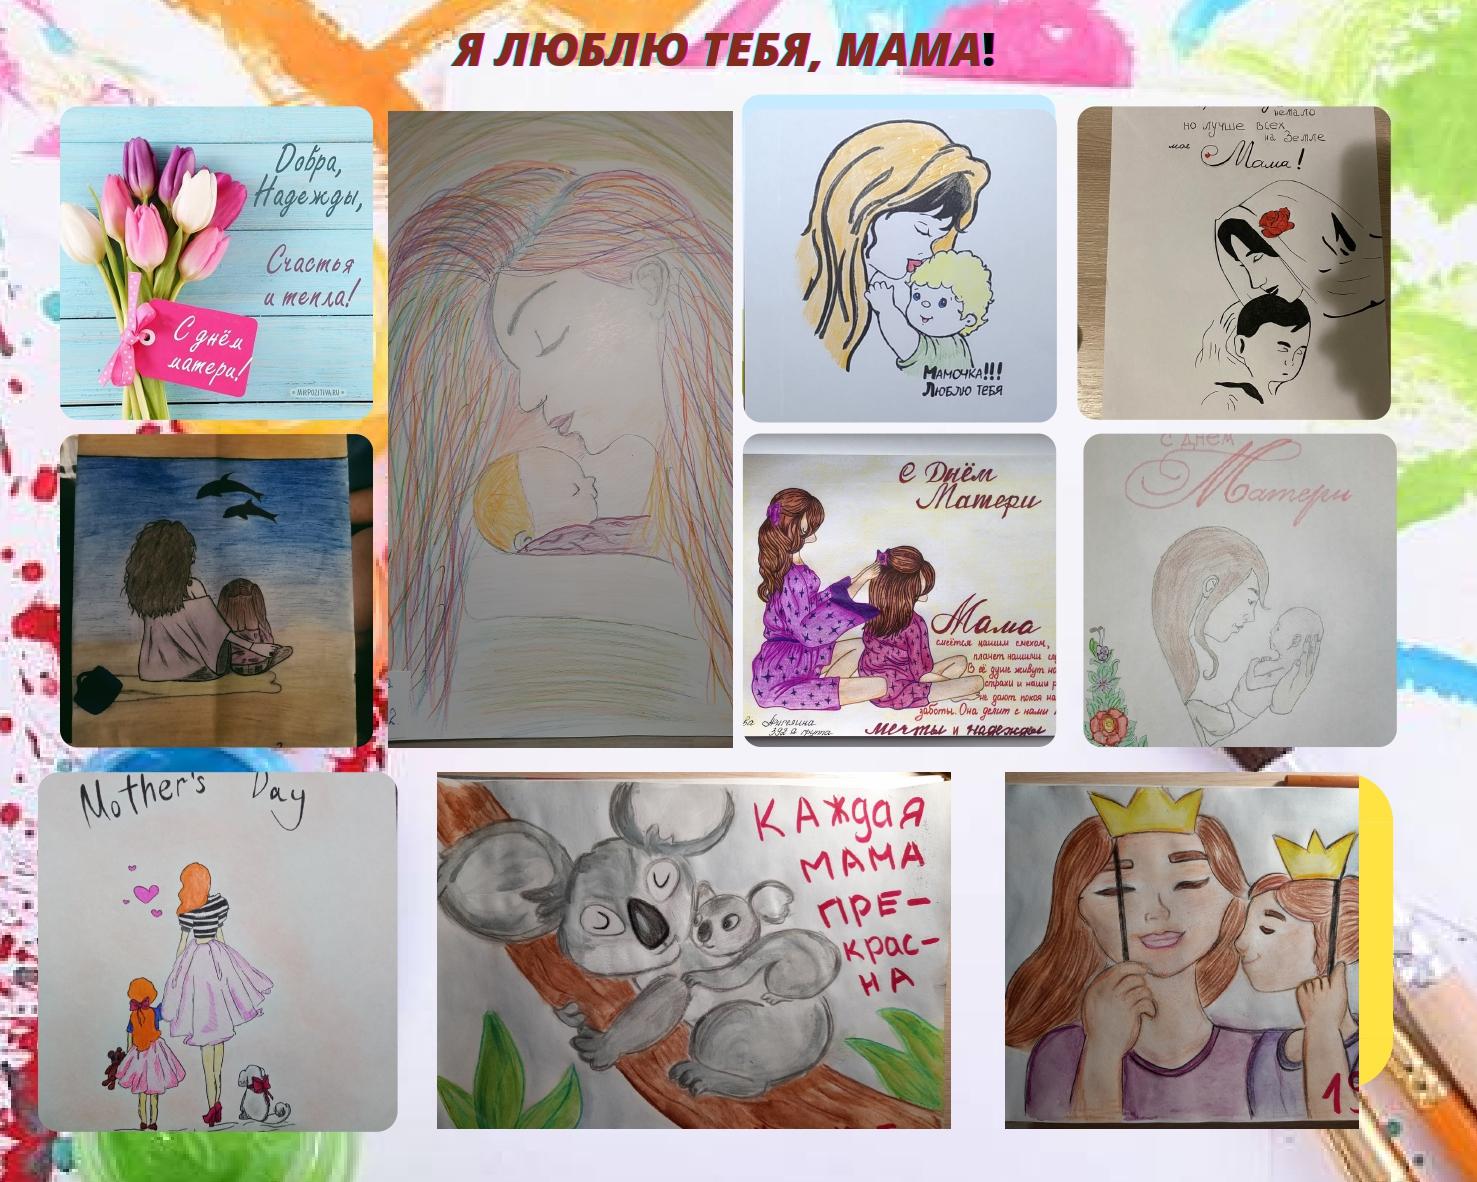 Будущие медики организовали выставку рисунков «Я люблю тебя, мама!»